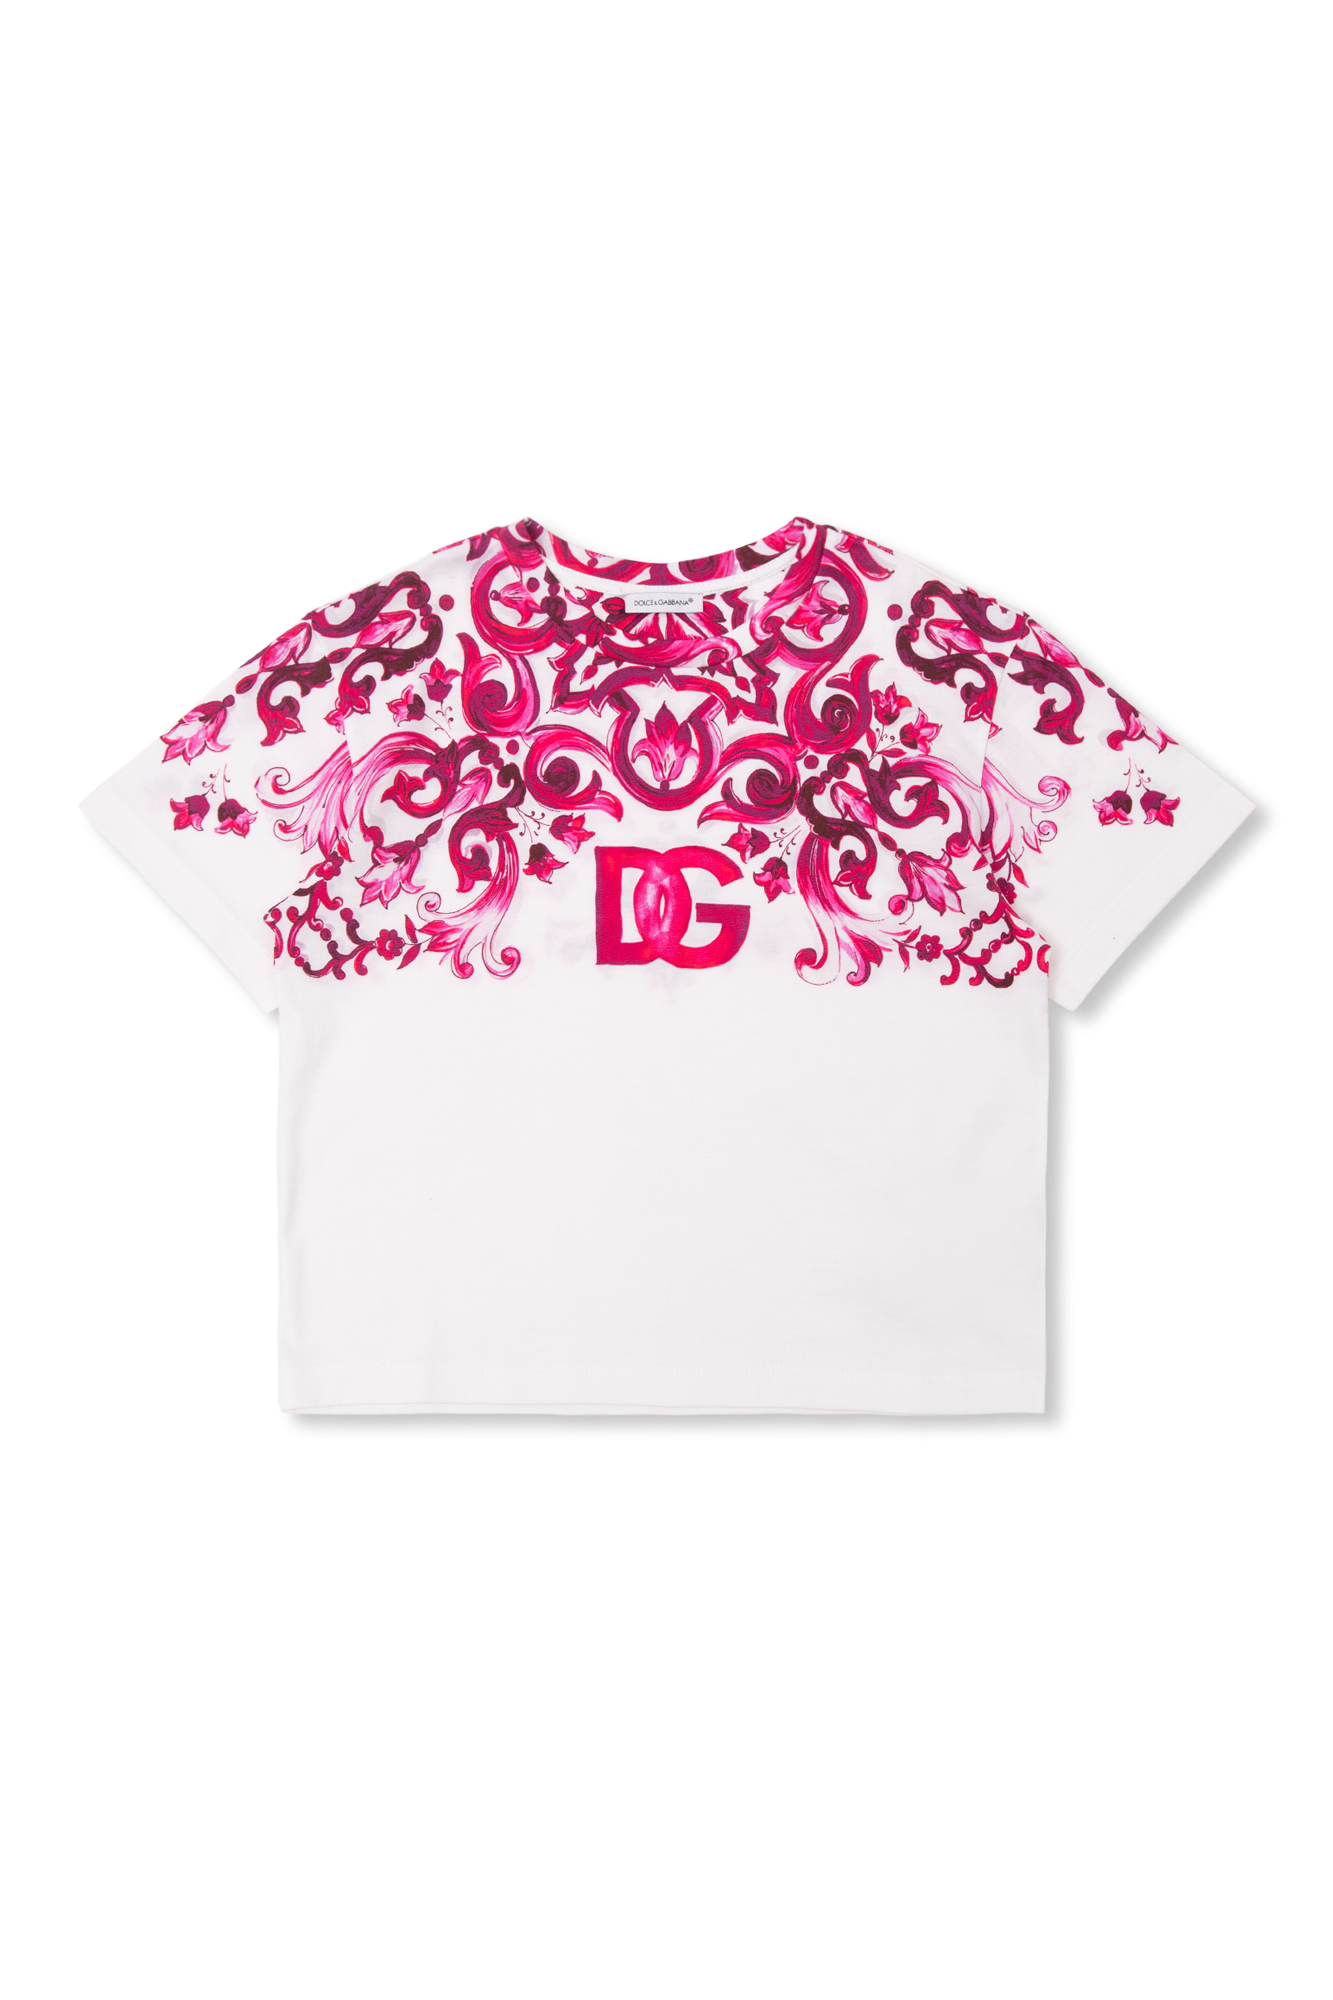 【新品・タグ付き】DOLCE&GABBANA Tシャツ (サイズ46)